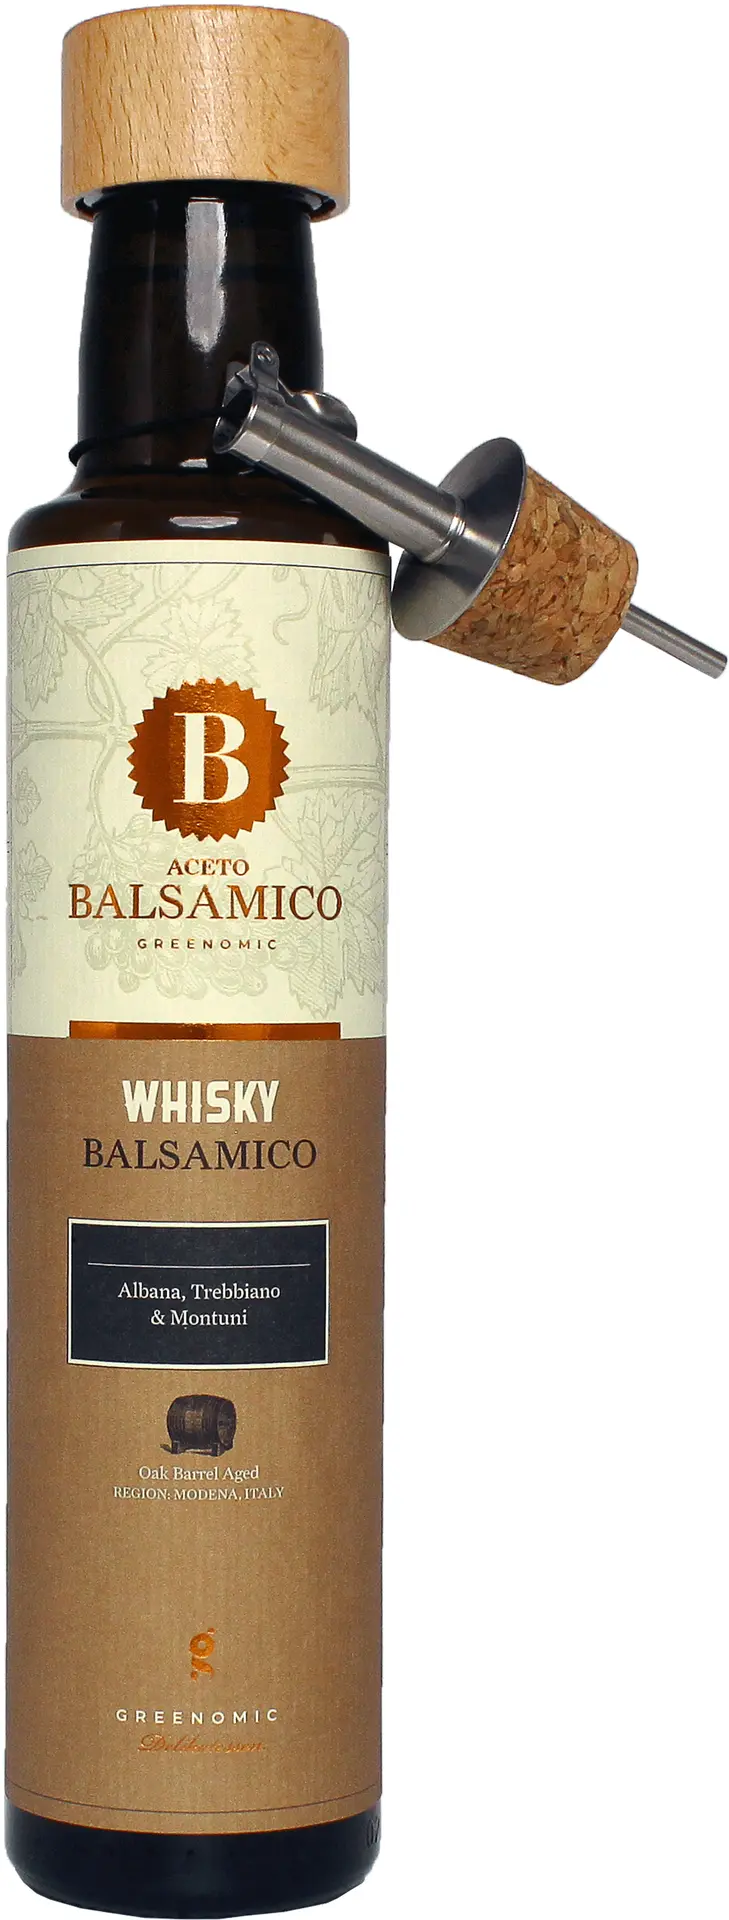 GREENOMIC - Greenomic – Balsamico mit Whisky + Ausgießer - Balsamico-Essig in Premium-Qualität aus Italien